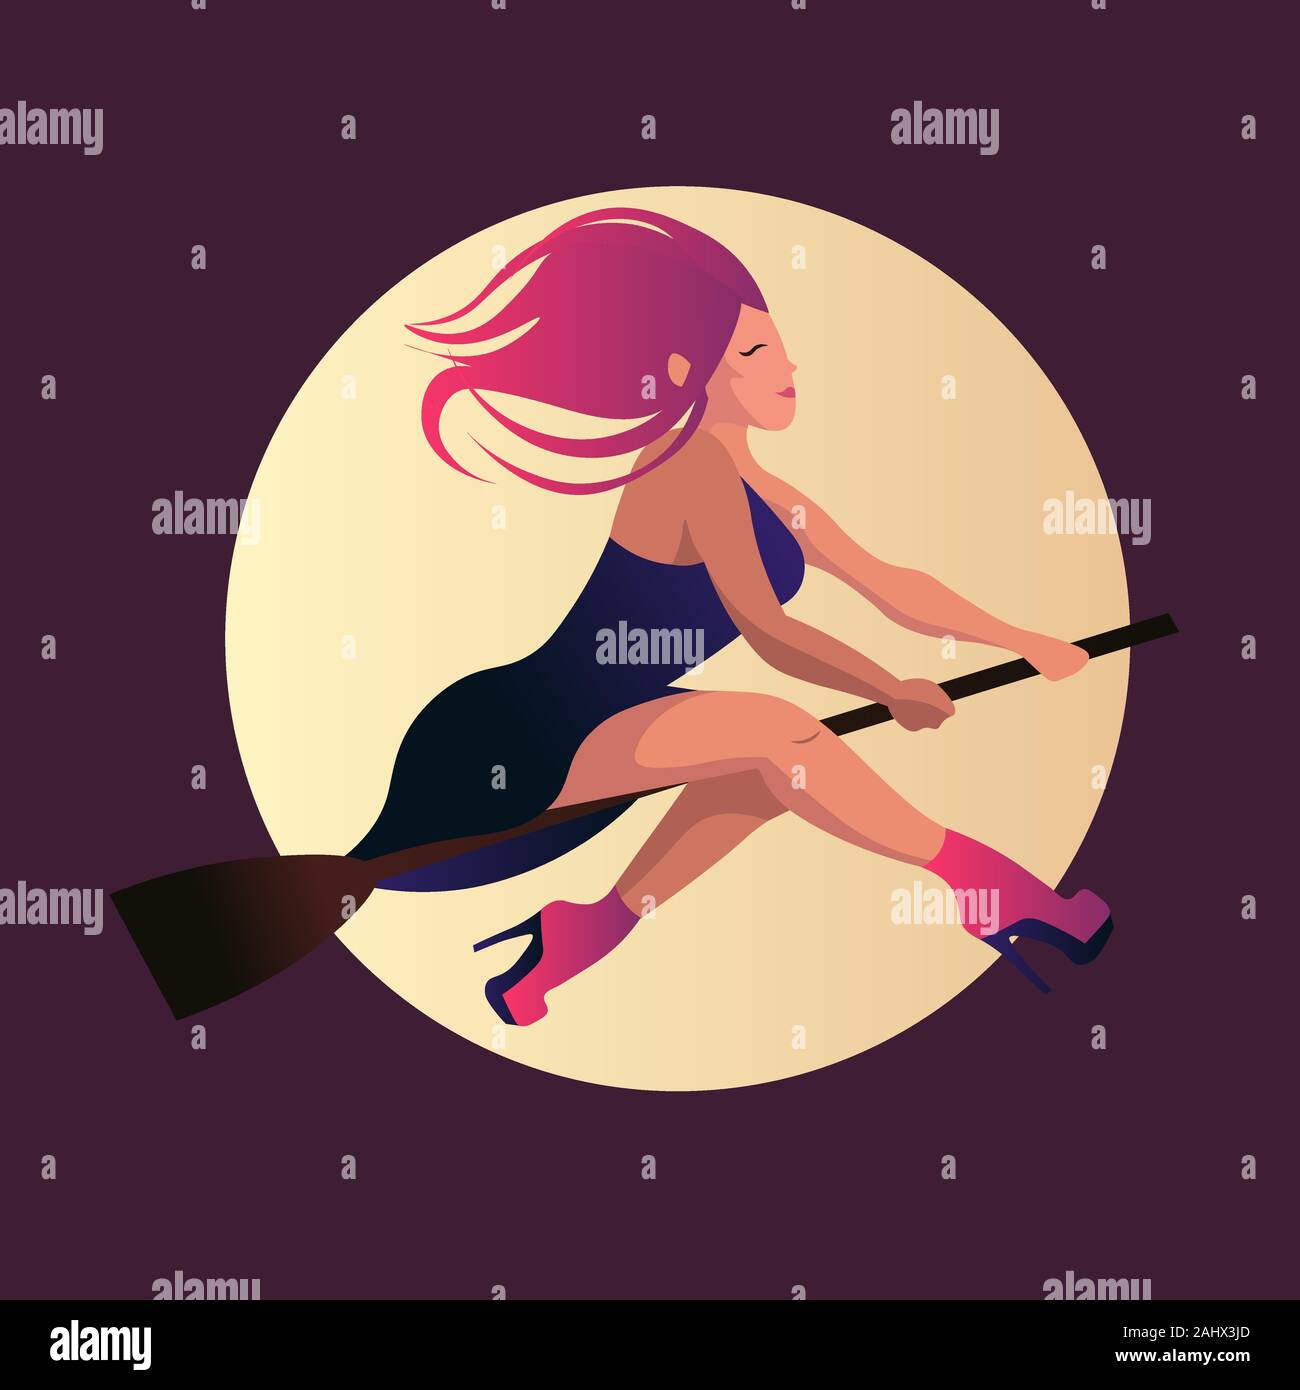 Junge Hexe mit einem wilden Haaren und High Heels fliegen unter dem Mondlicht. Flache Darstellung einer Frau mit rosa Schuhe und lila Kleid. Stock Vektor